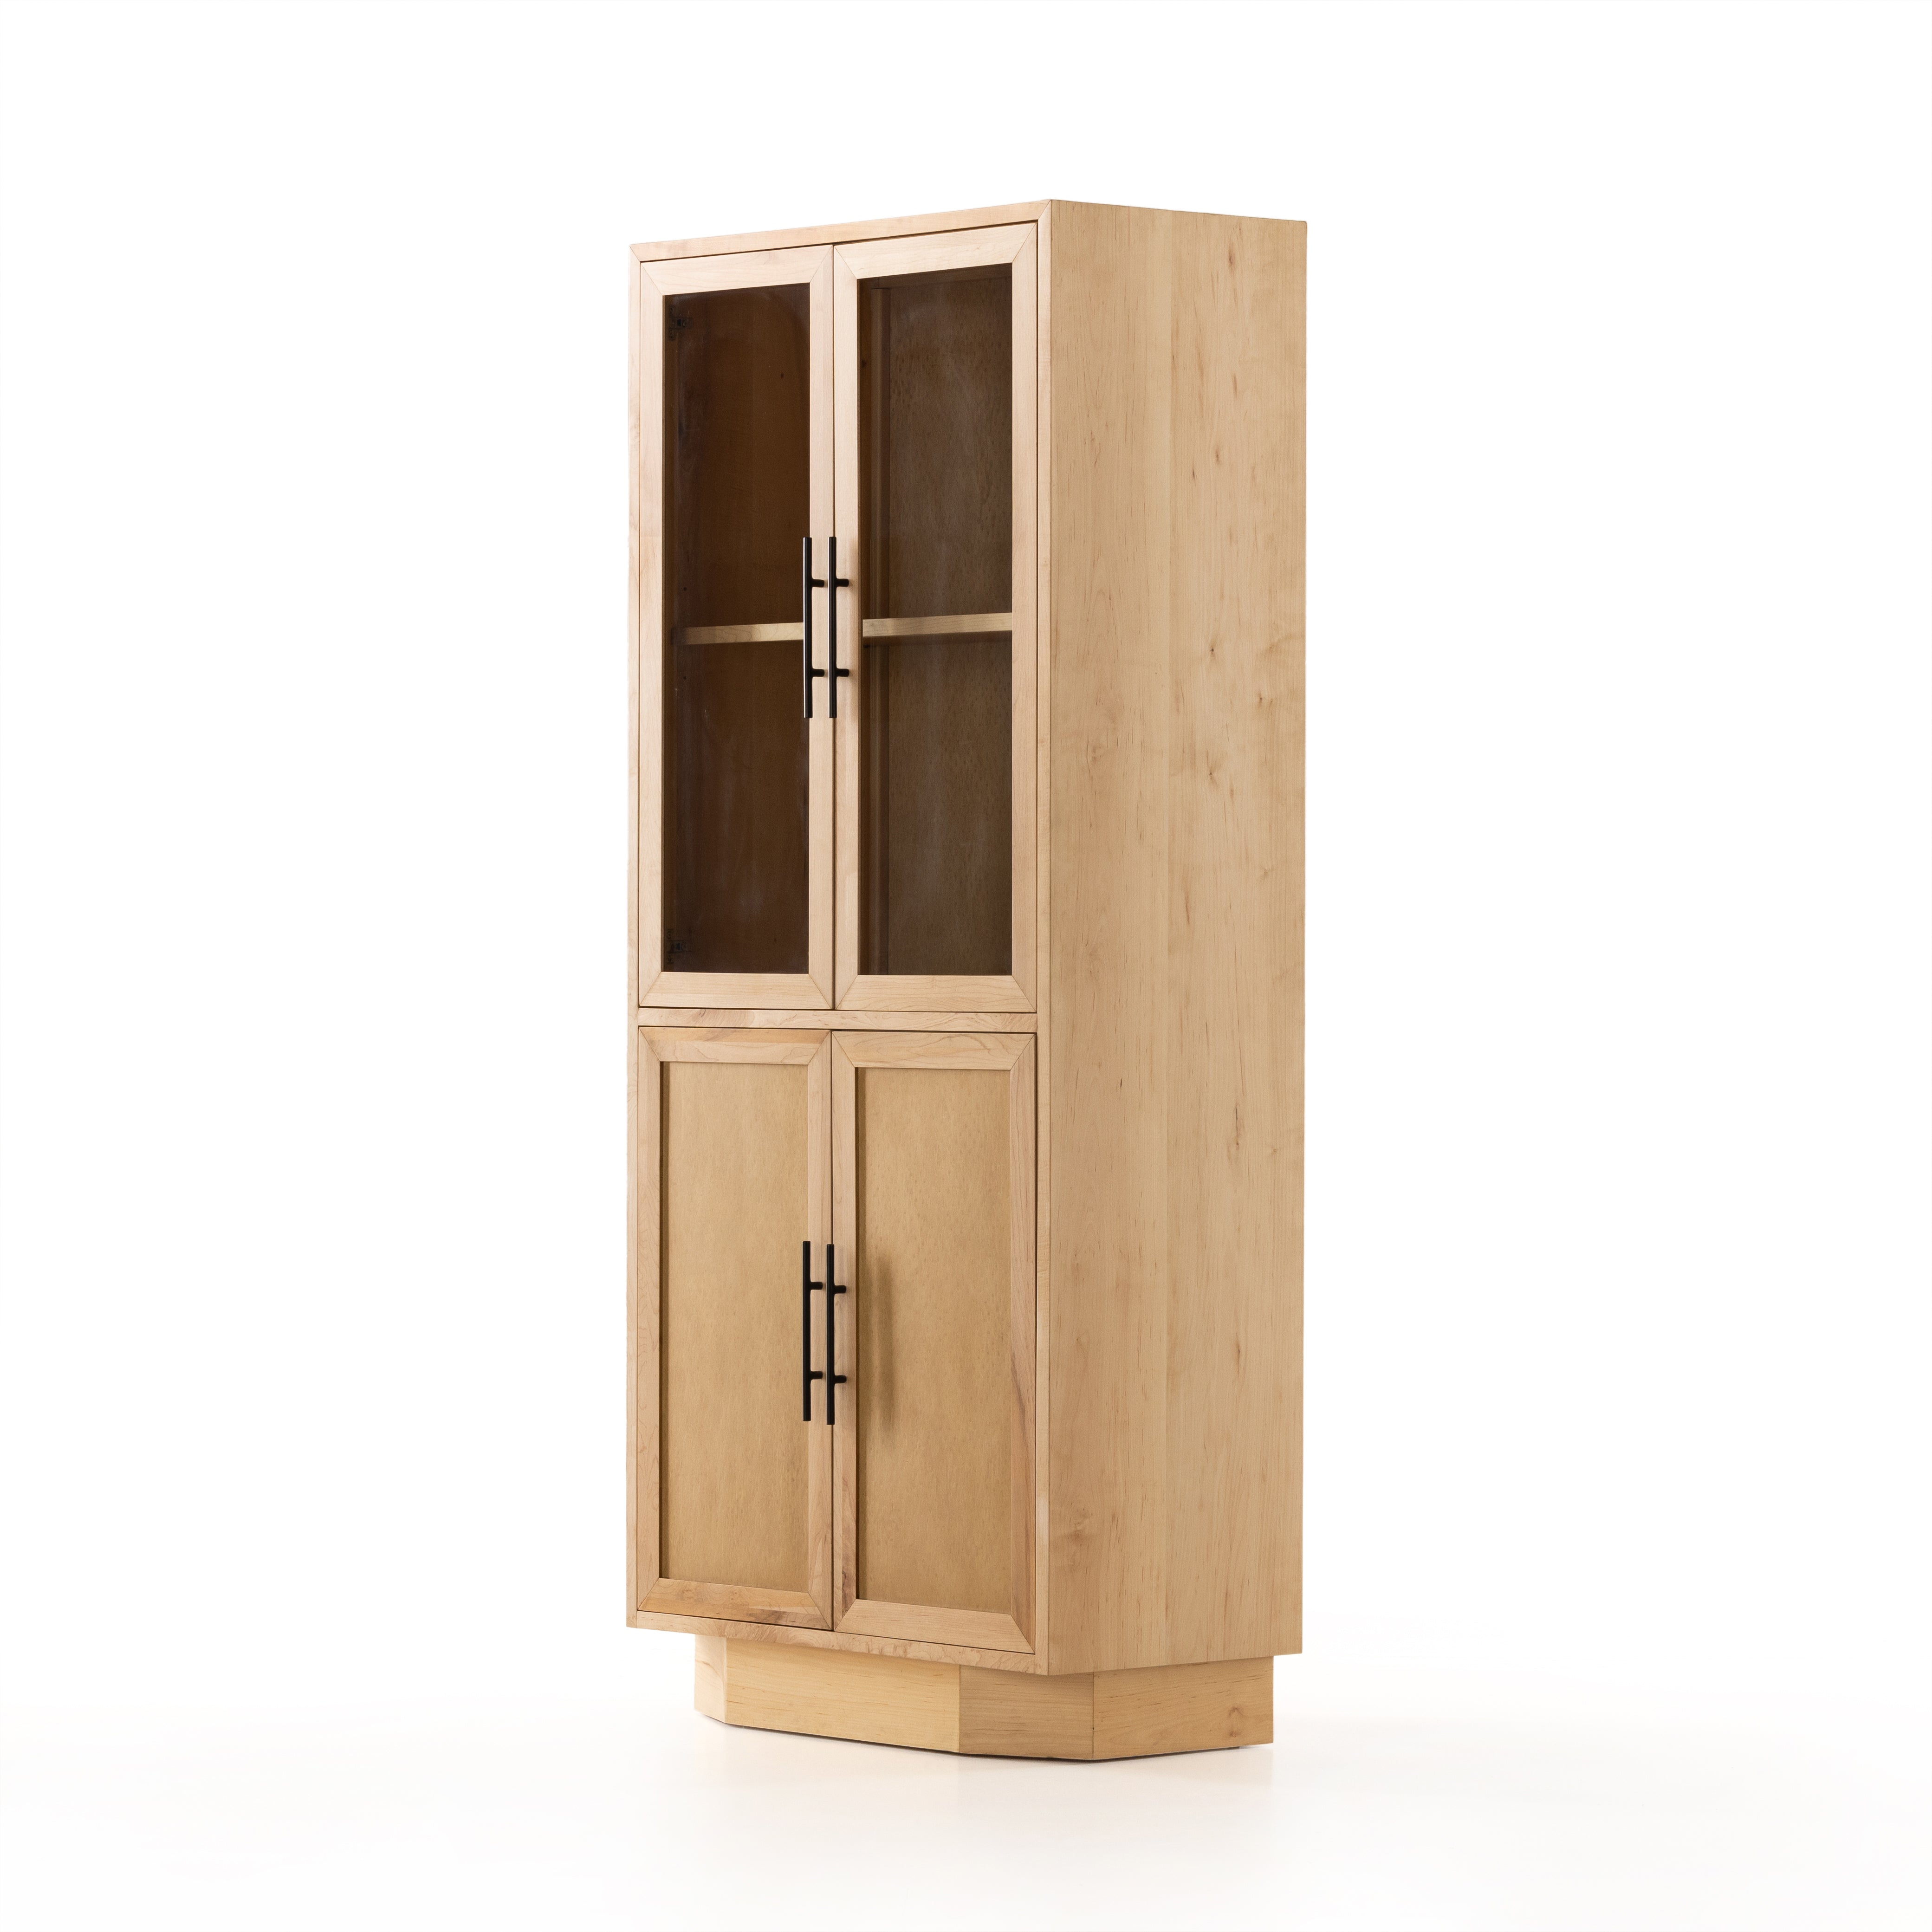 Ophira Cabinet - StyleMeGHD - Cabinet + Bookshelves